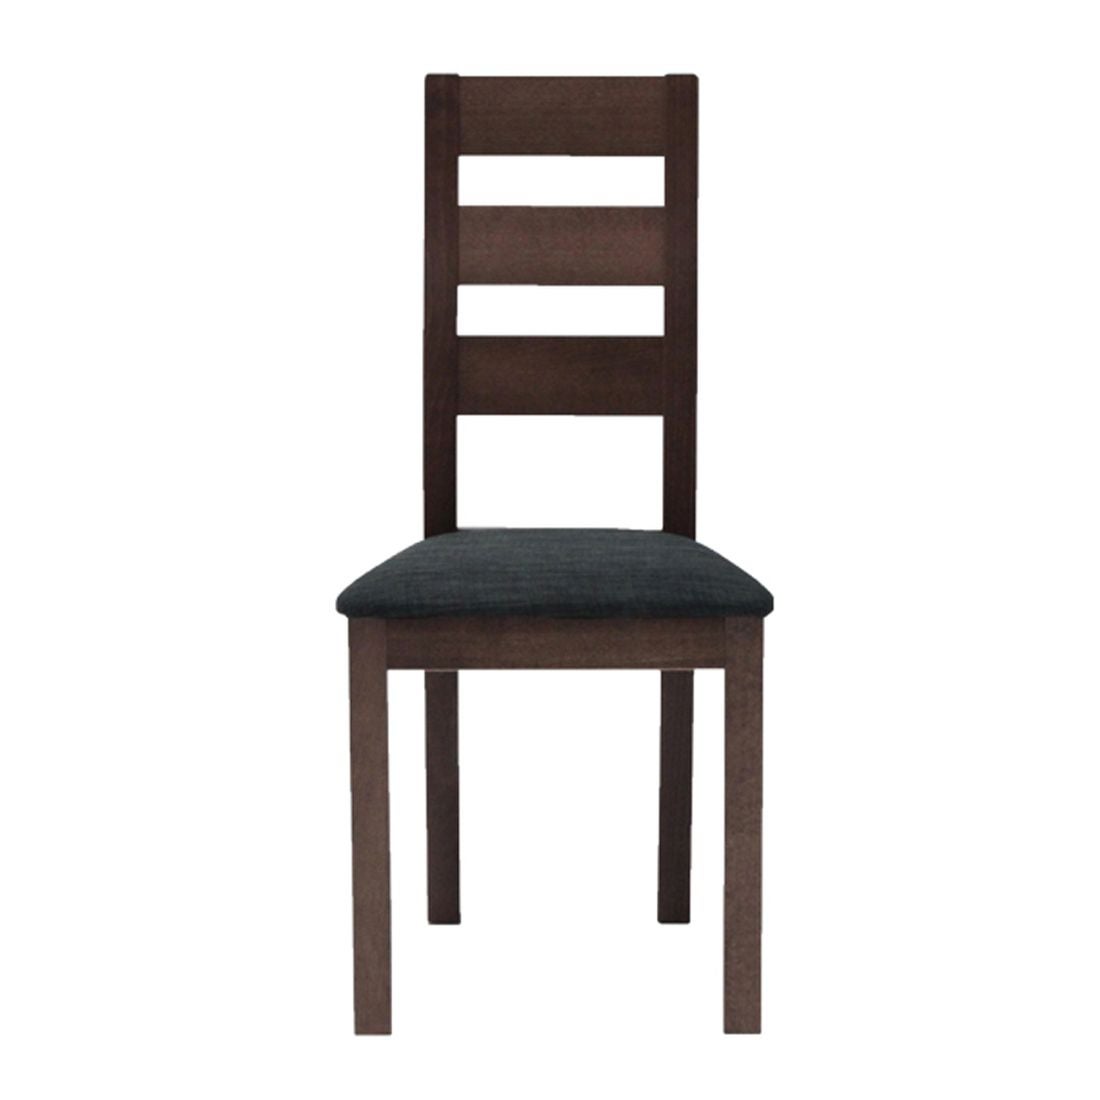 เก้าอี้ทานอาหาร เก้าอี้ไม้เบาะผ้า รุ่น Everly สีสีน้ำตาล-SB Design Square